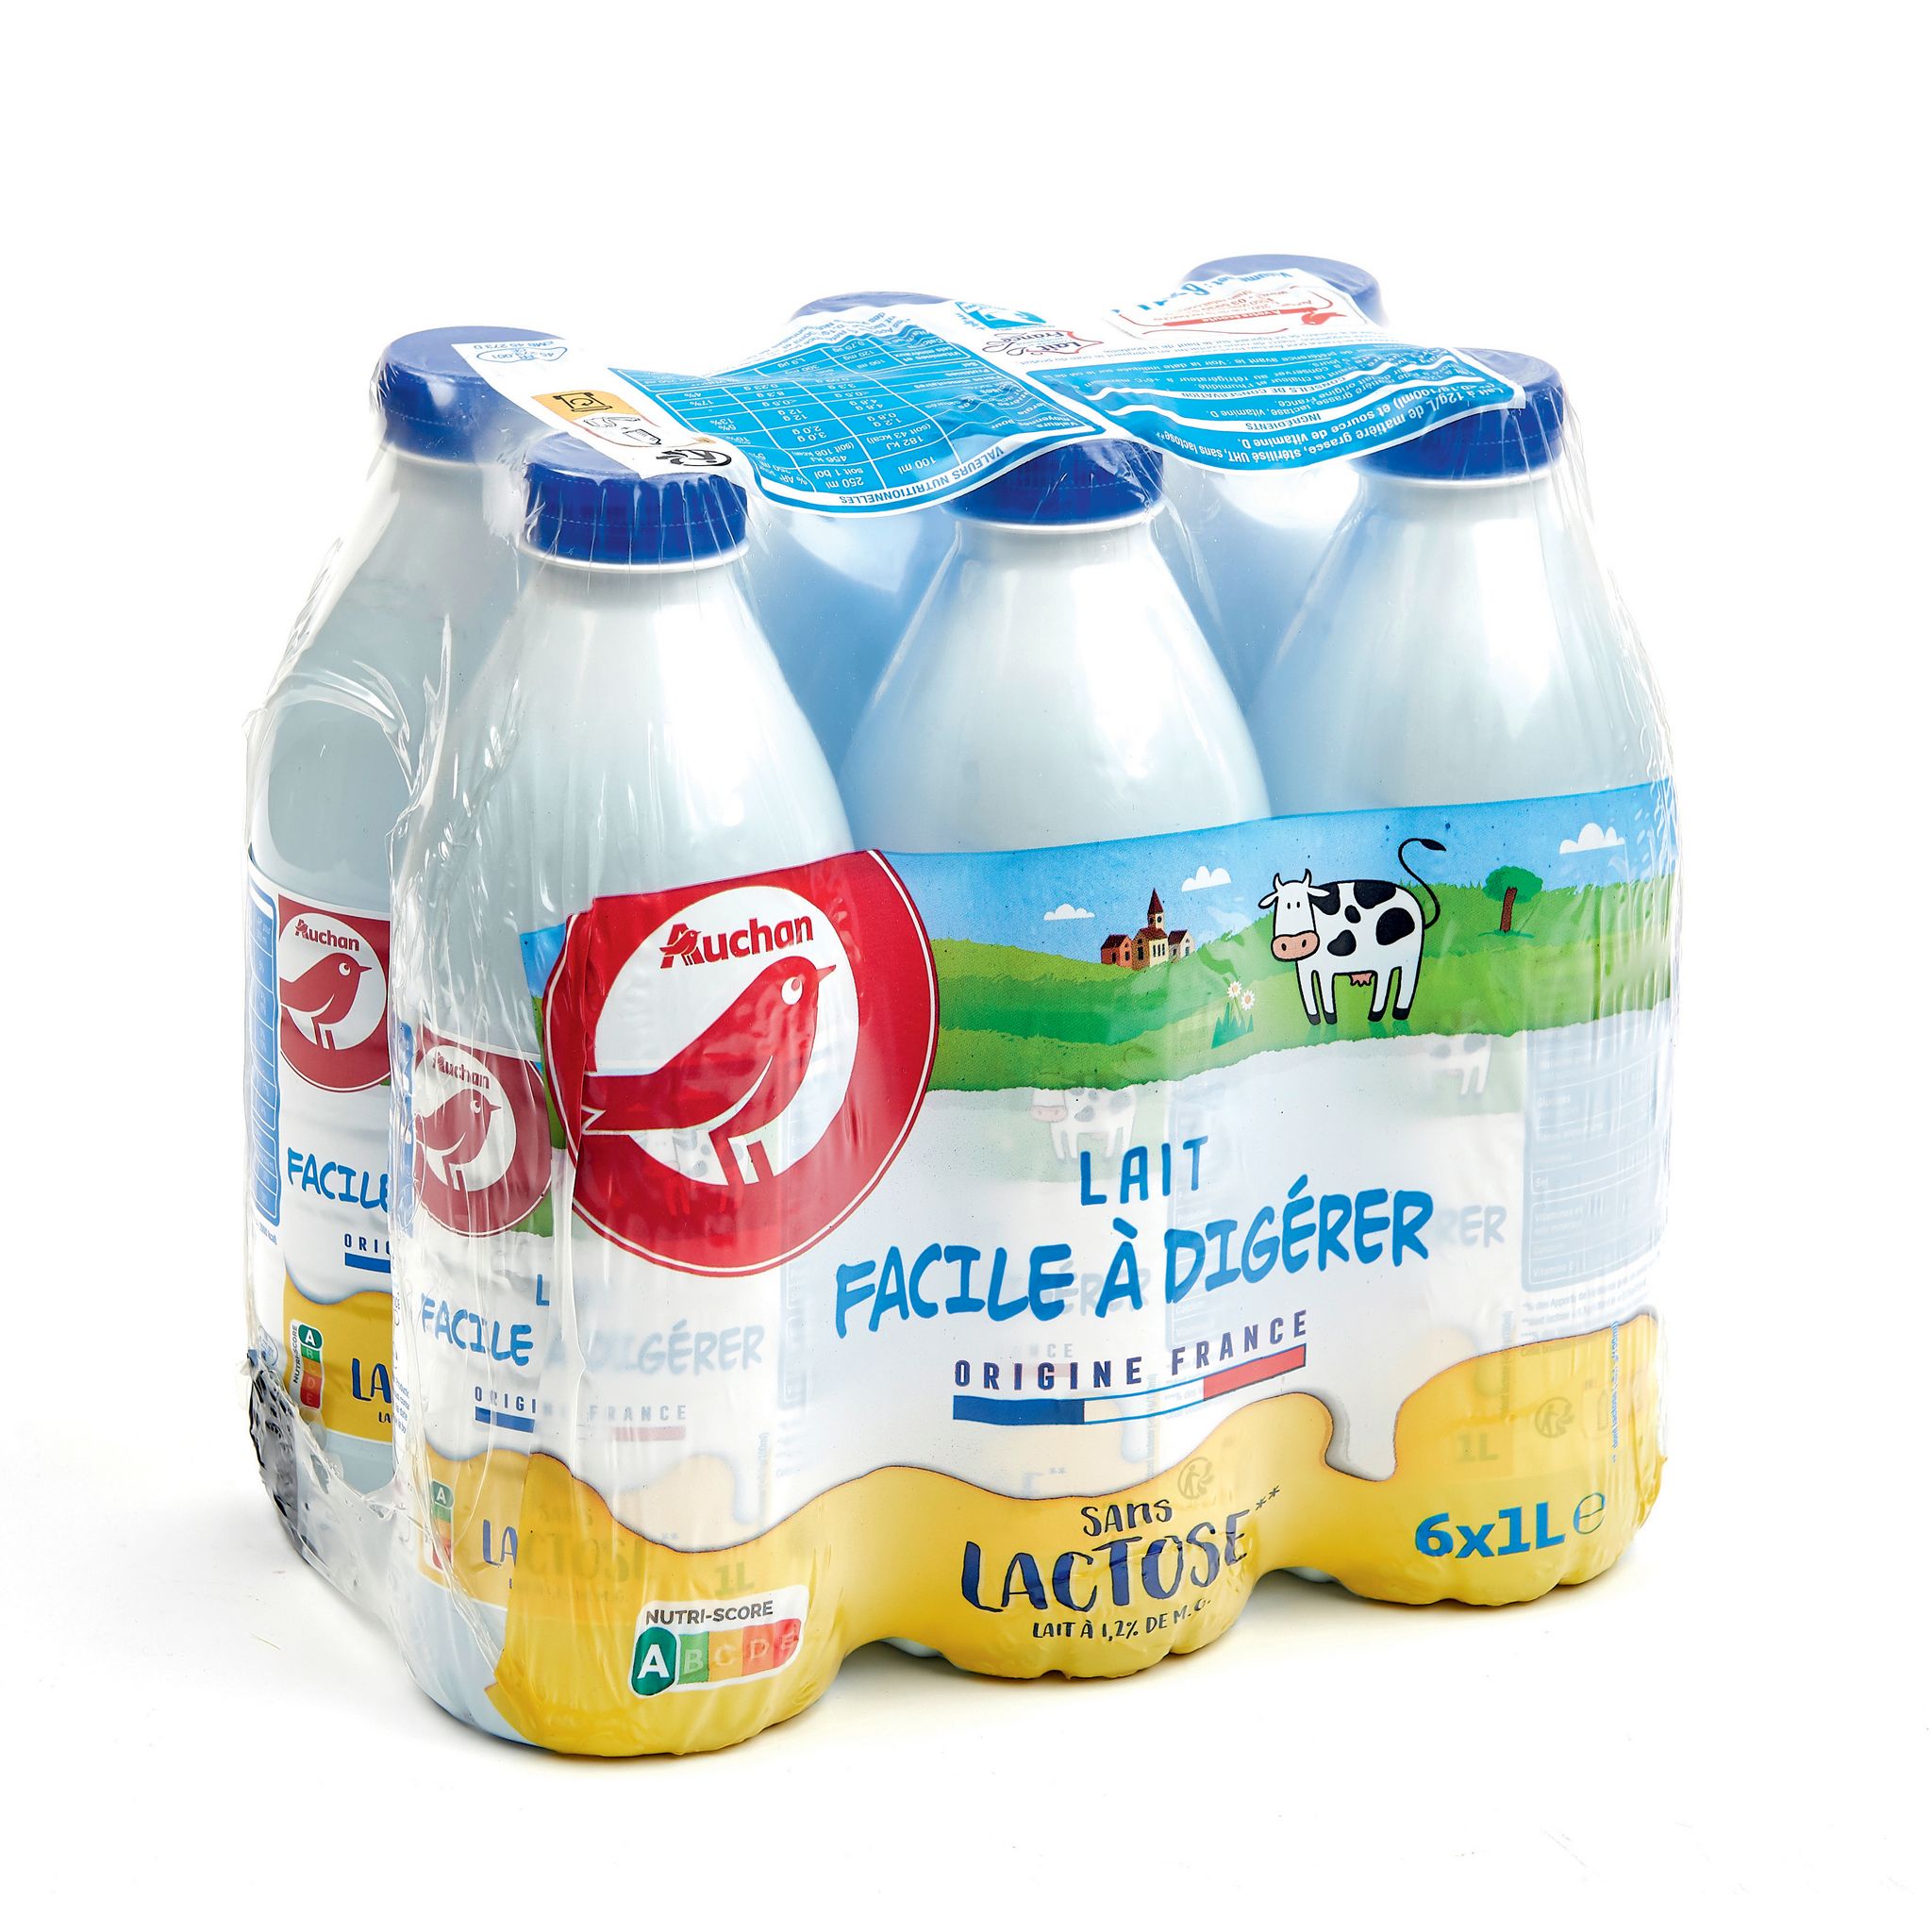 AUCHAN Lait facile à digérer sans lactose UHT 6x1L pas cher